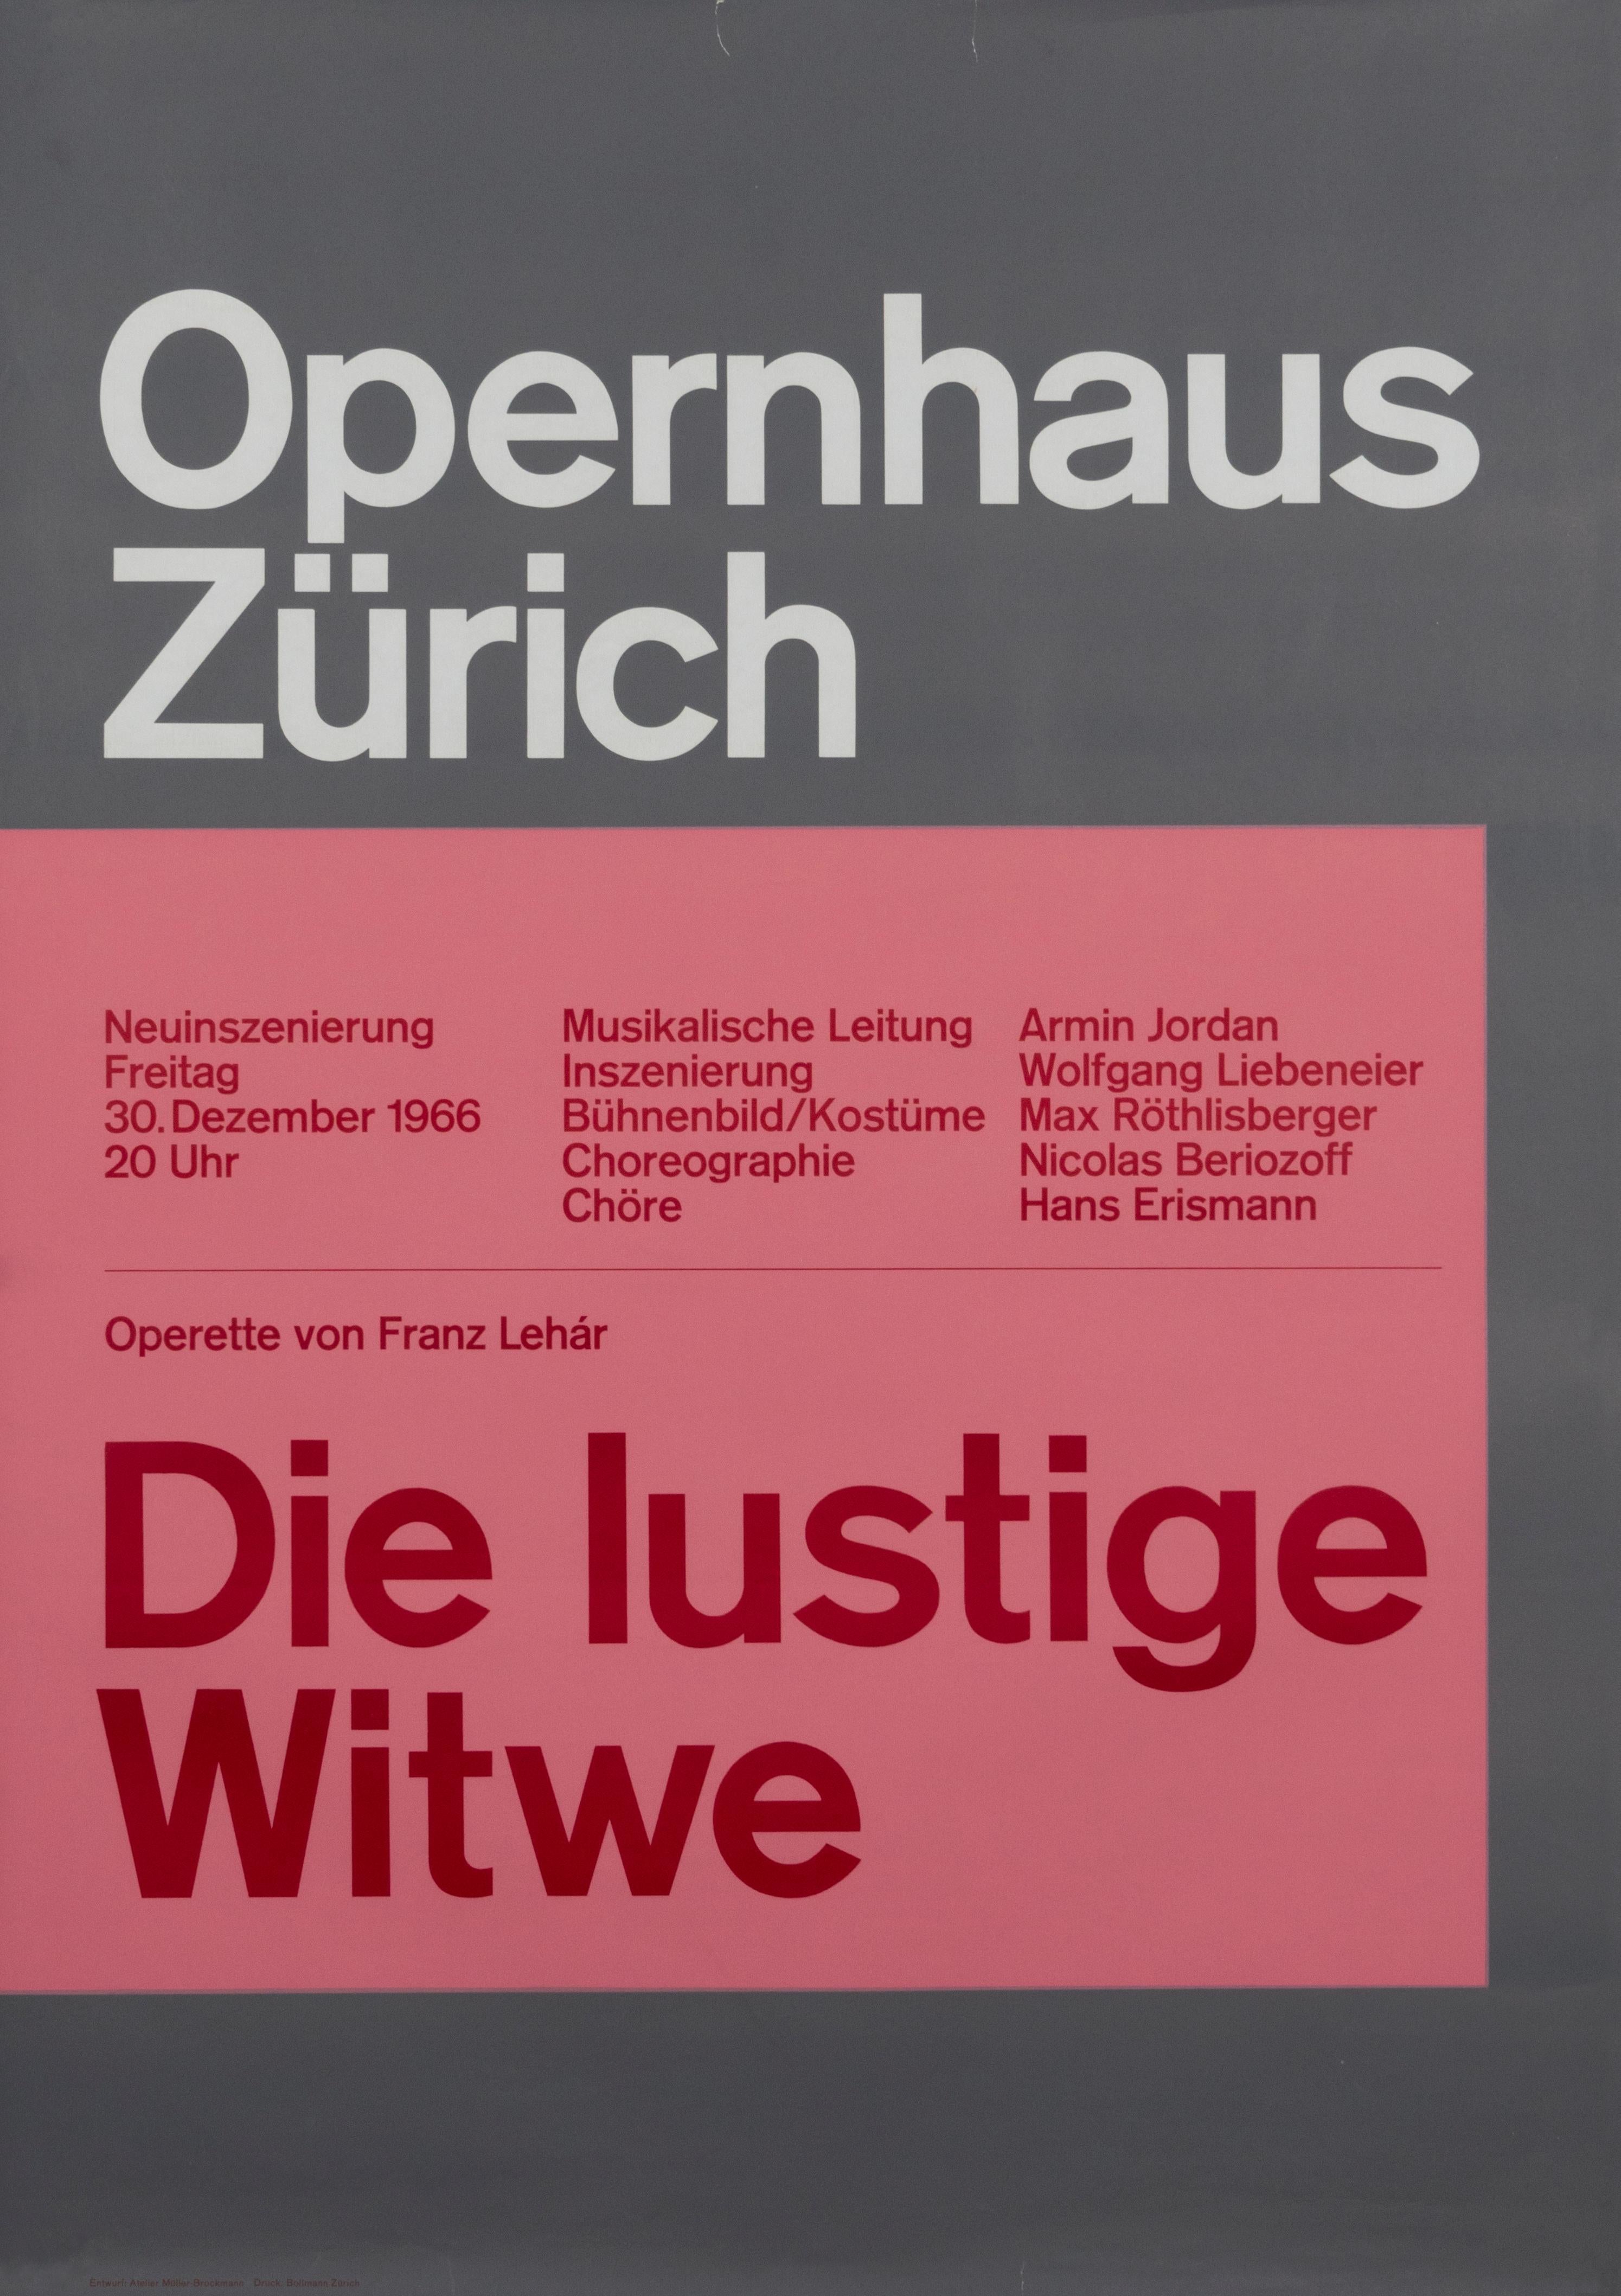 "Opernhaus Zurich - The Merry Widow" Opera Typographic Original Vintage Poster - Print by Josef Müller-Brockmann